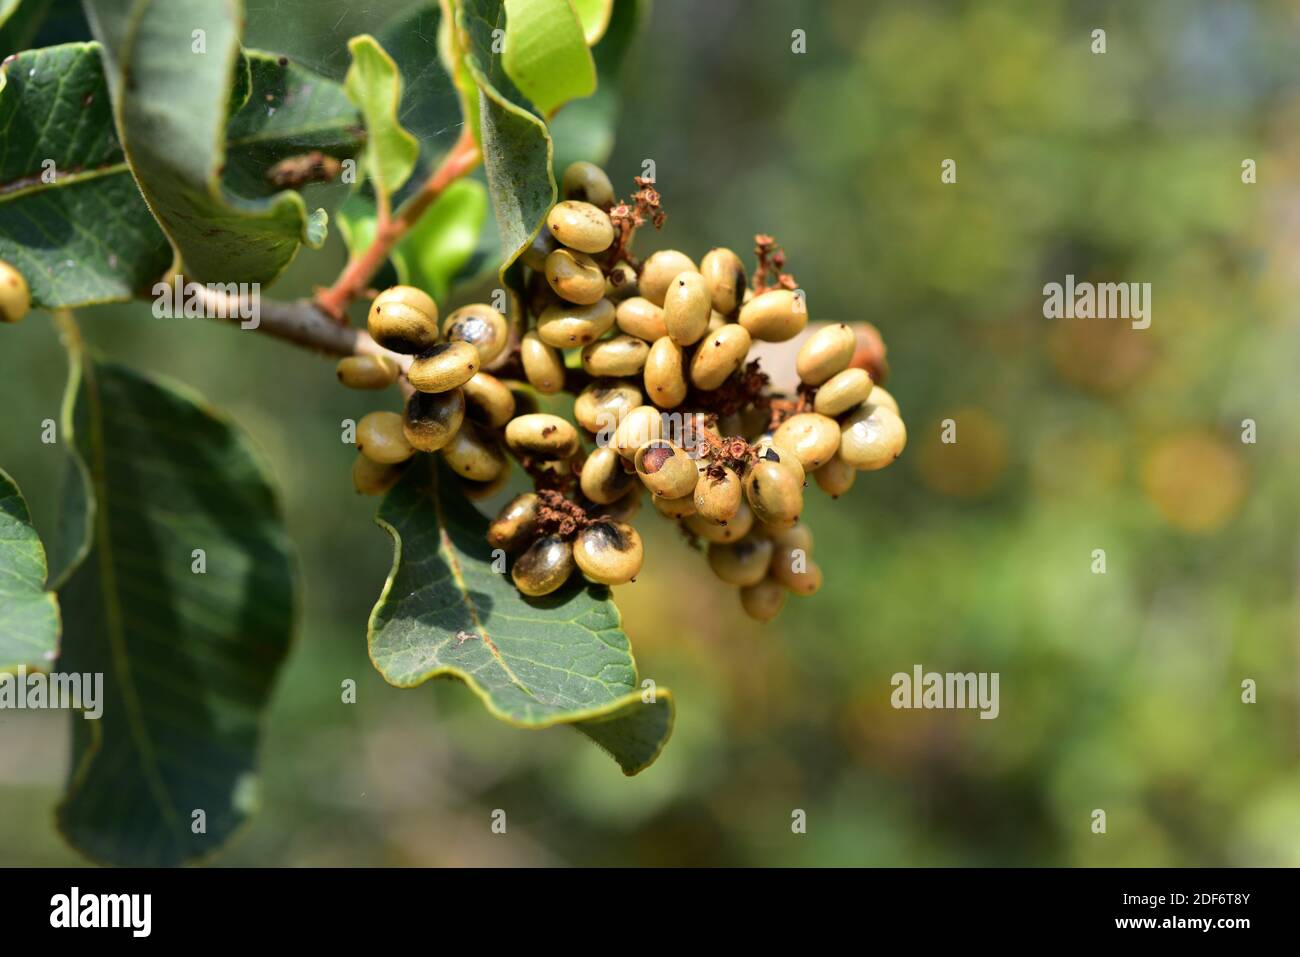 Der Liter-Baum (Lithraea caustica) ist ein immergrender allergener Baum, der in Zentralchile endemisch ist. Früchte und Blätter Detail. Stockfoto